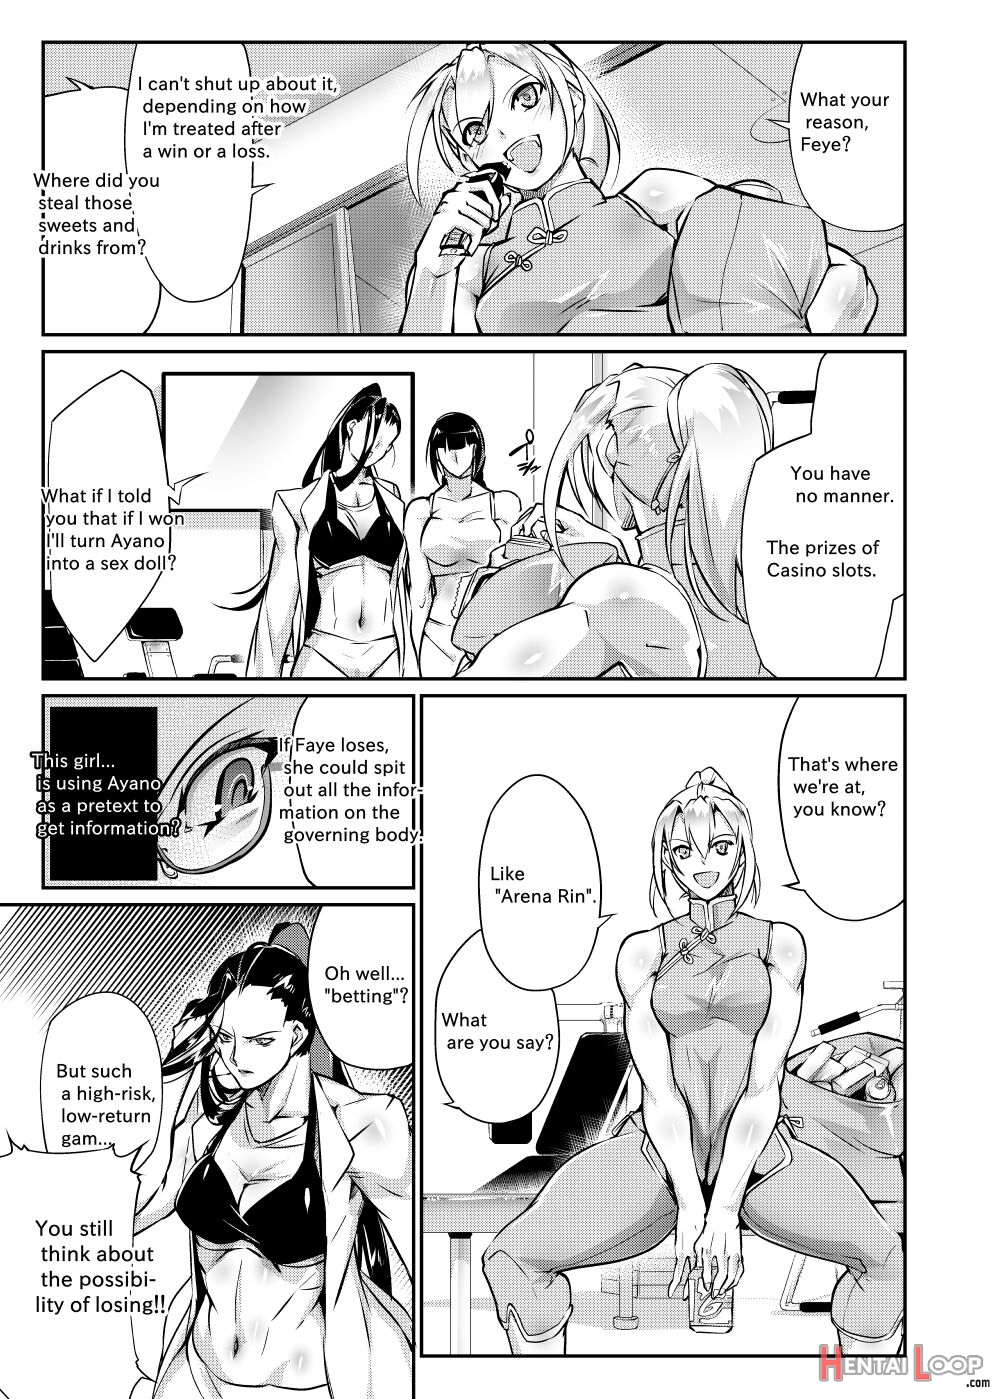 Tougijou Rin - Arena Rin 5 page 24